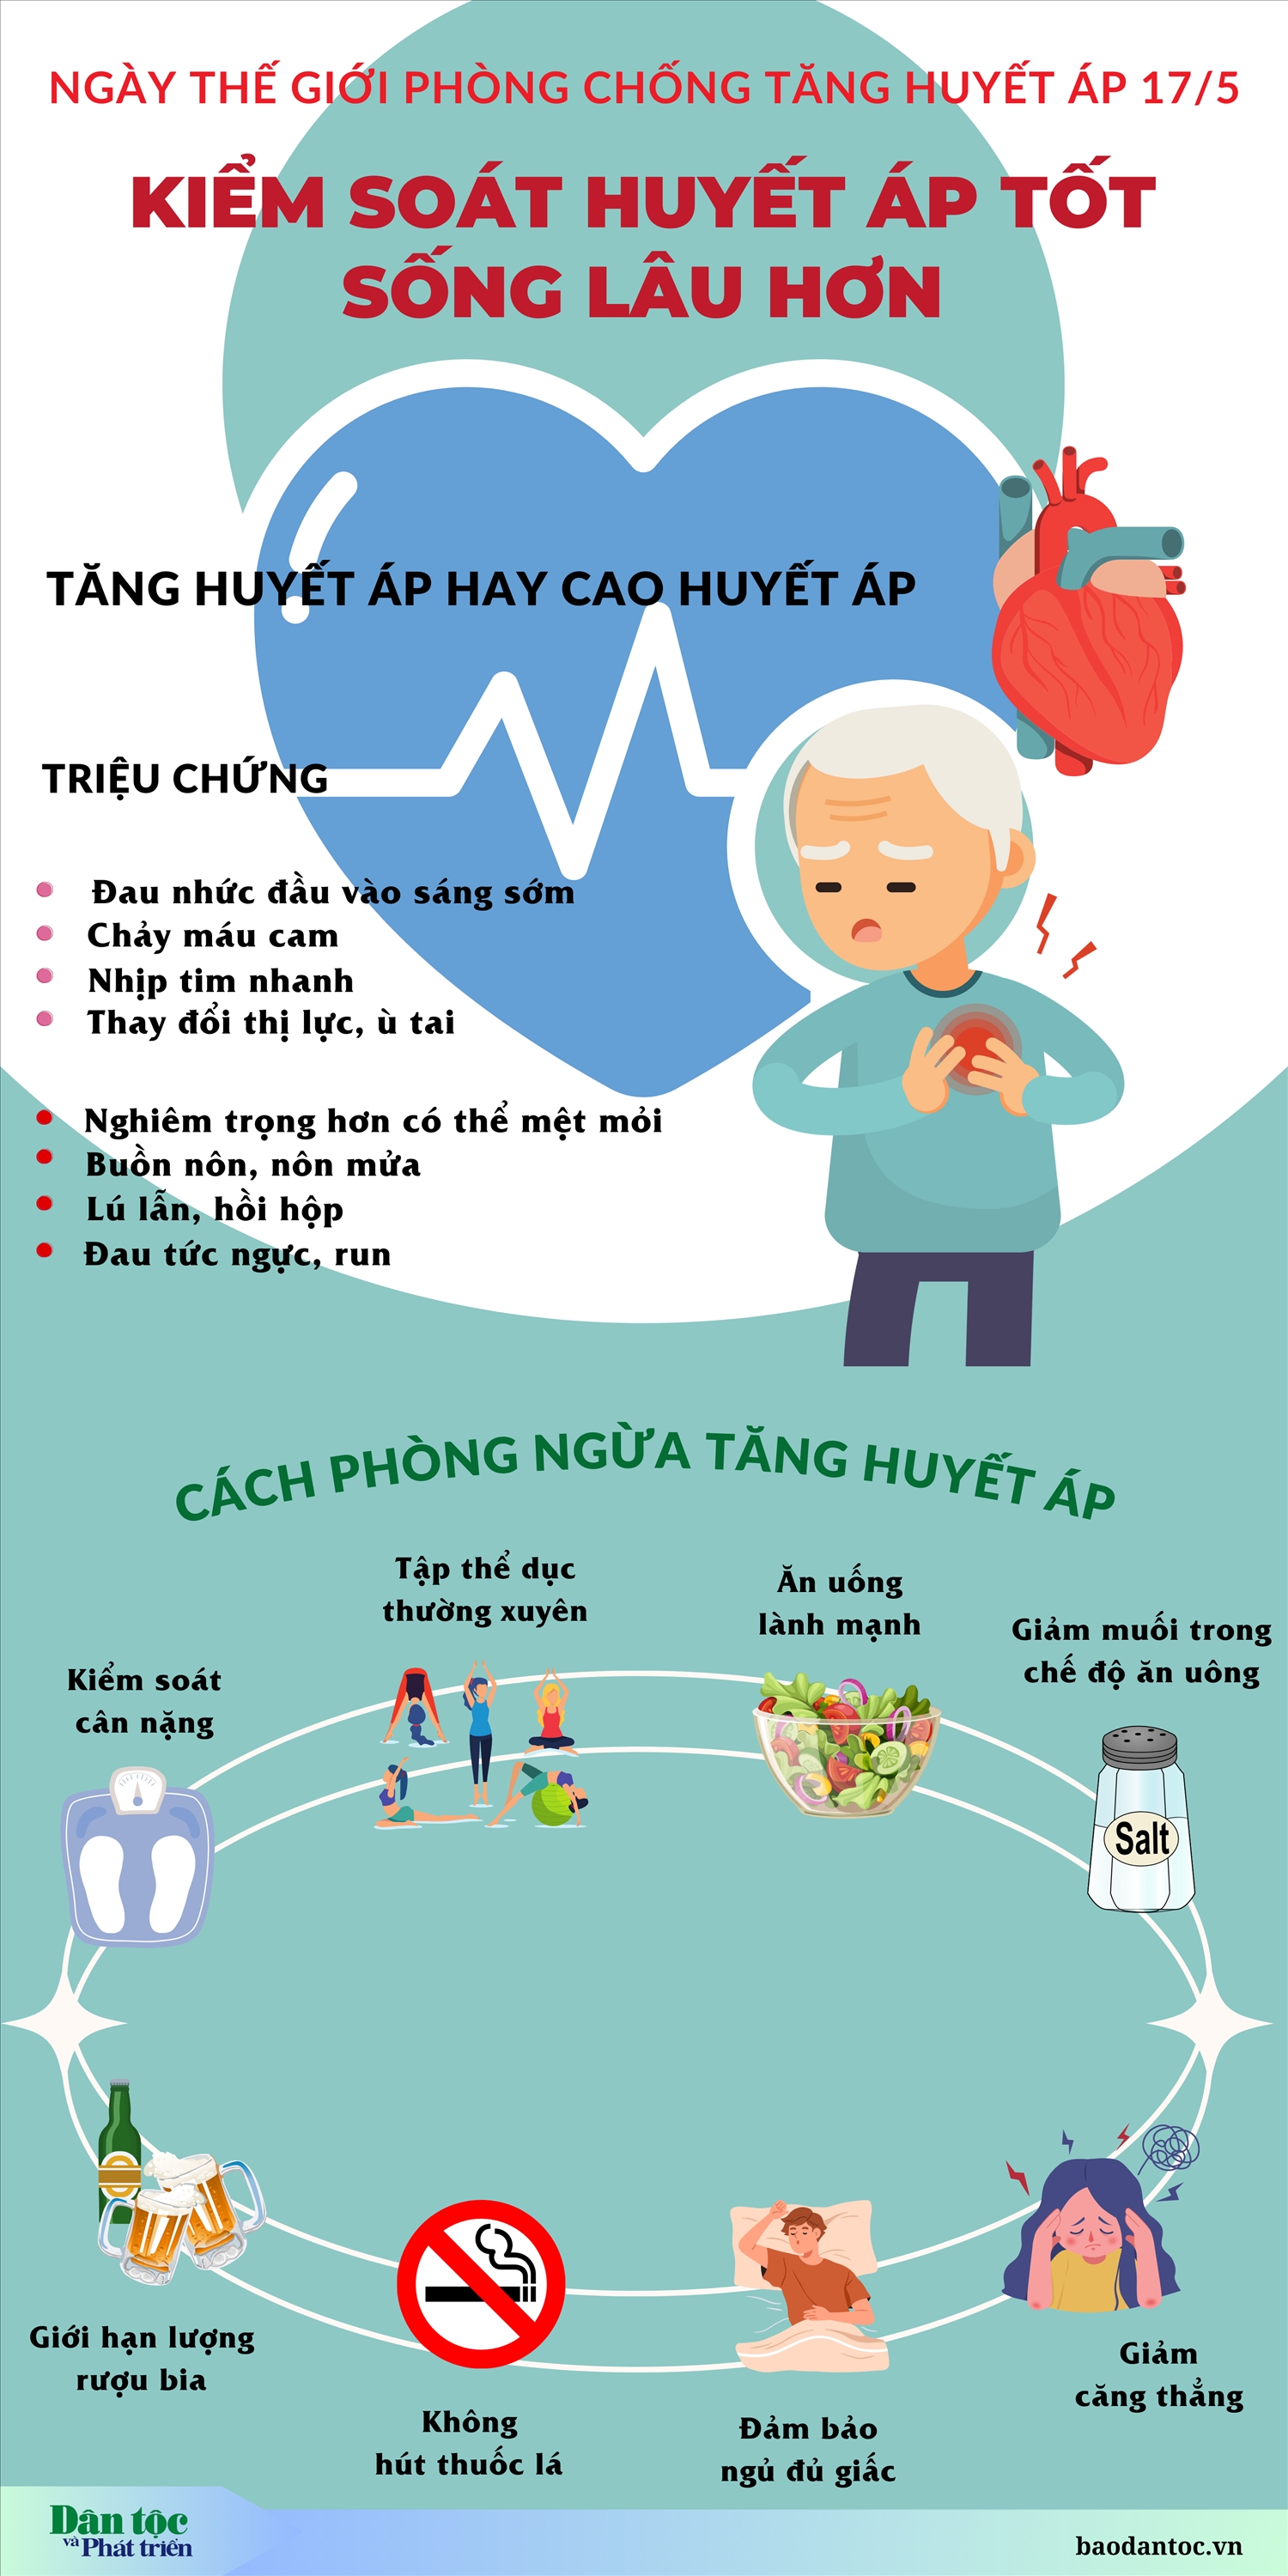 (inforgraphic) Ngày Thế giới phòng chống Tăng huyết áp 17/5: “Đo huyết áp đúng - Kiểm soát huyết áp tốt - Sống lâu hơn”